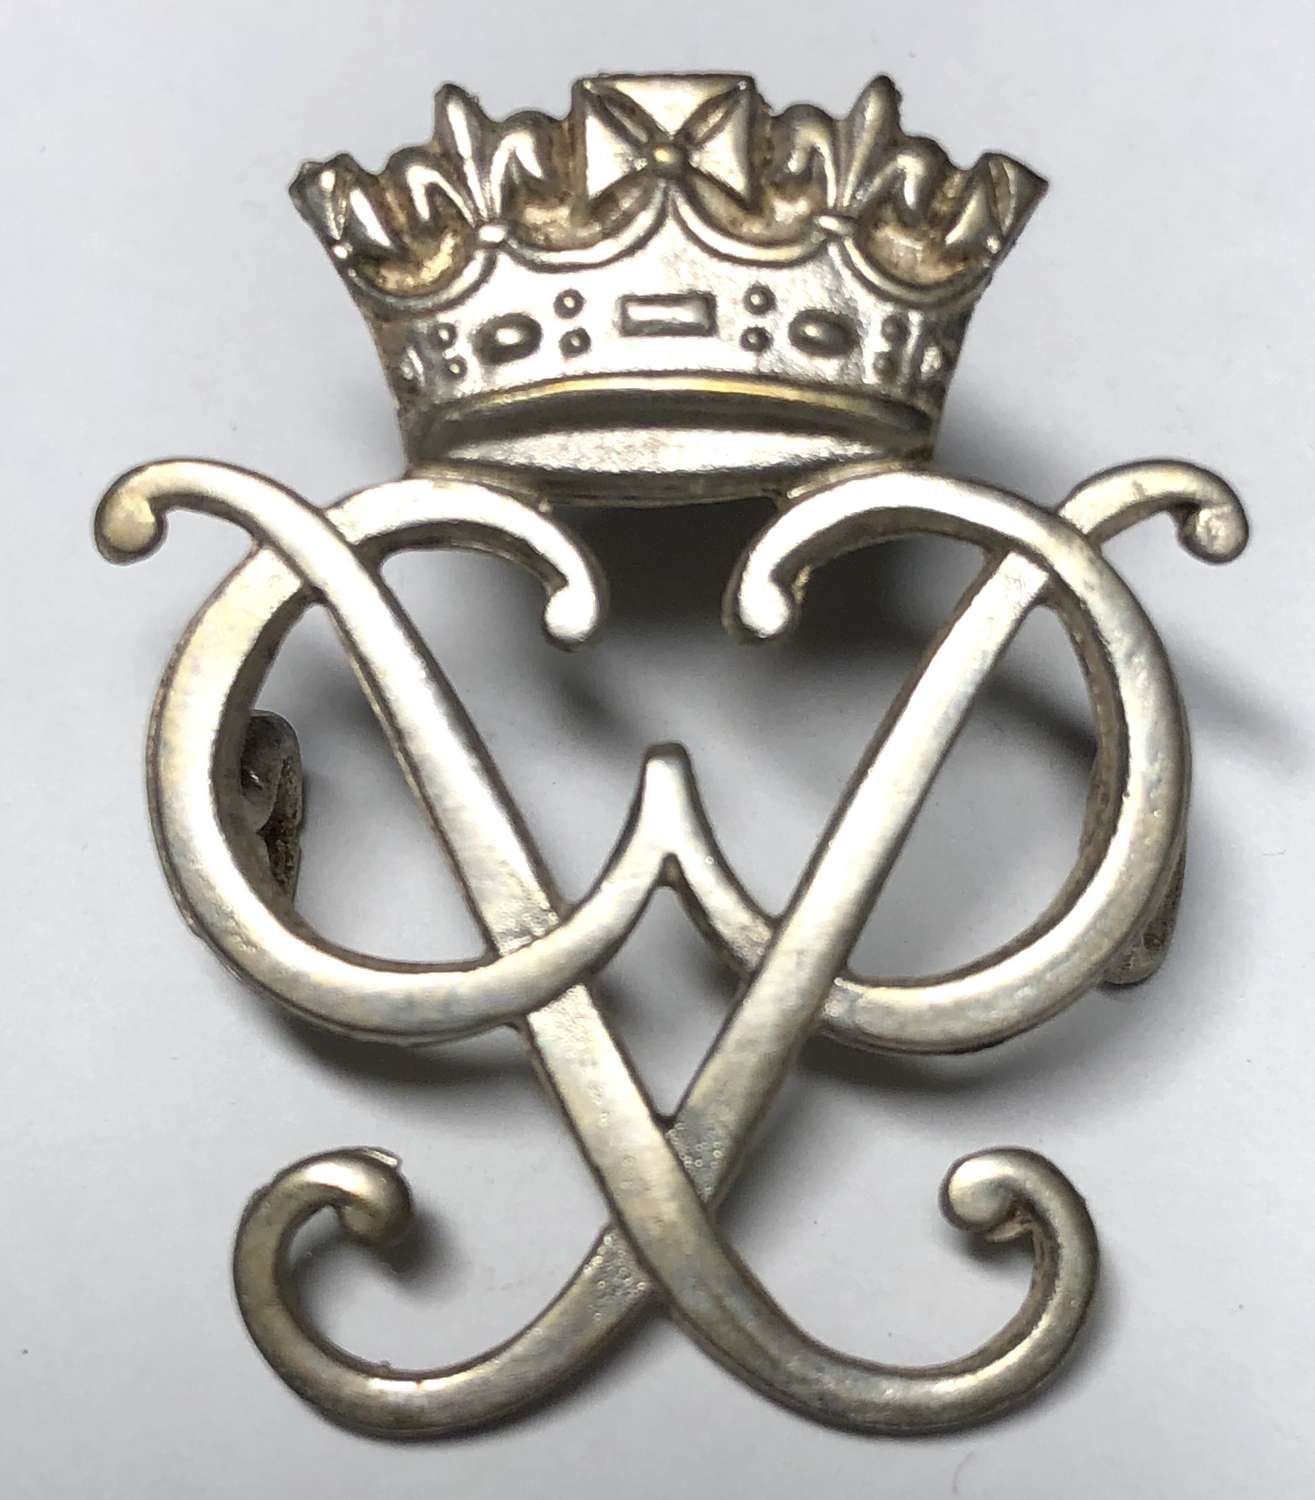 7th Duke of Edinburgh’s Own Gurkha Rifles pouch badge c1959-94